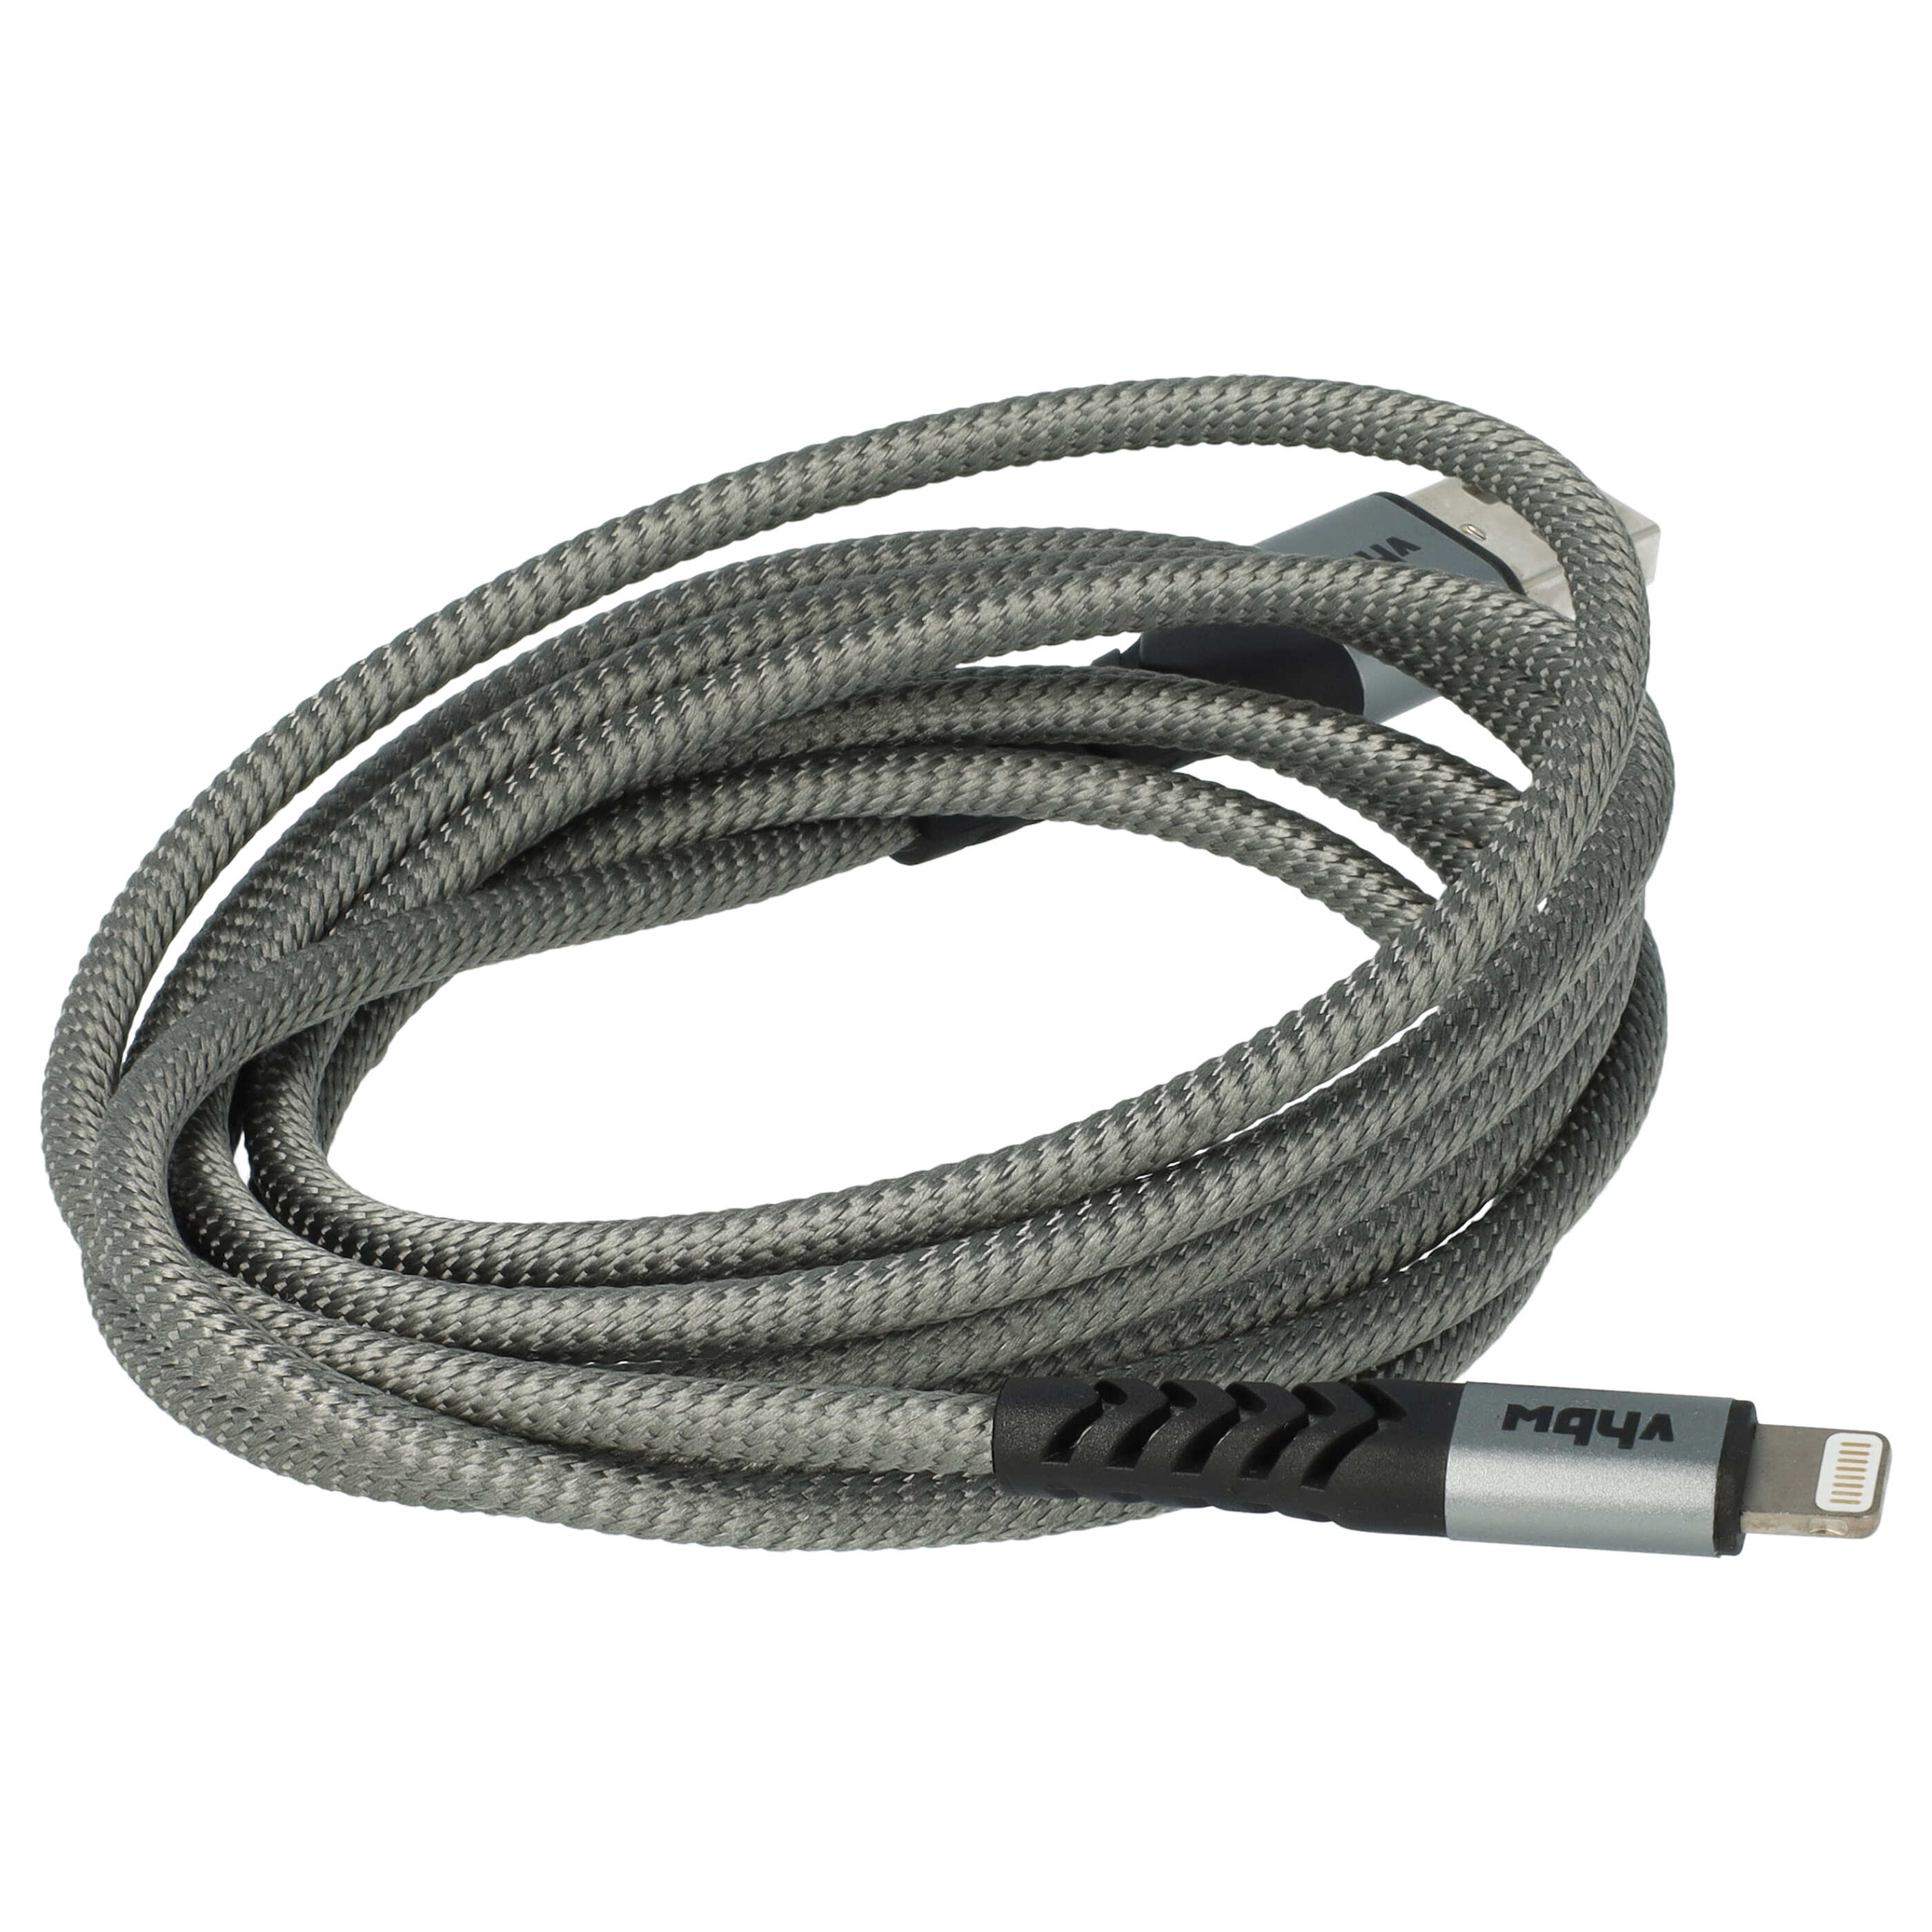 Câble Lightning vers USB A pour iOS Apple AirPods - noir / gris, 180cm